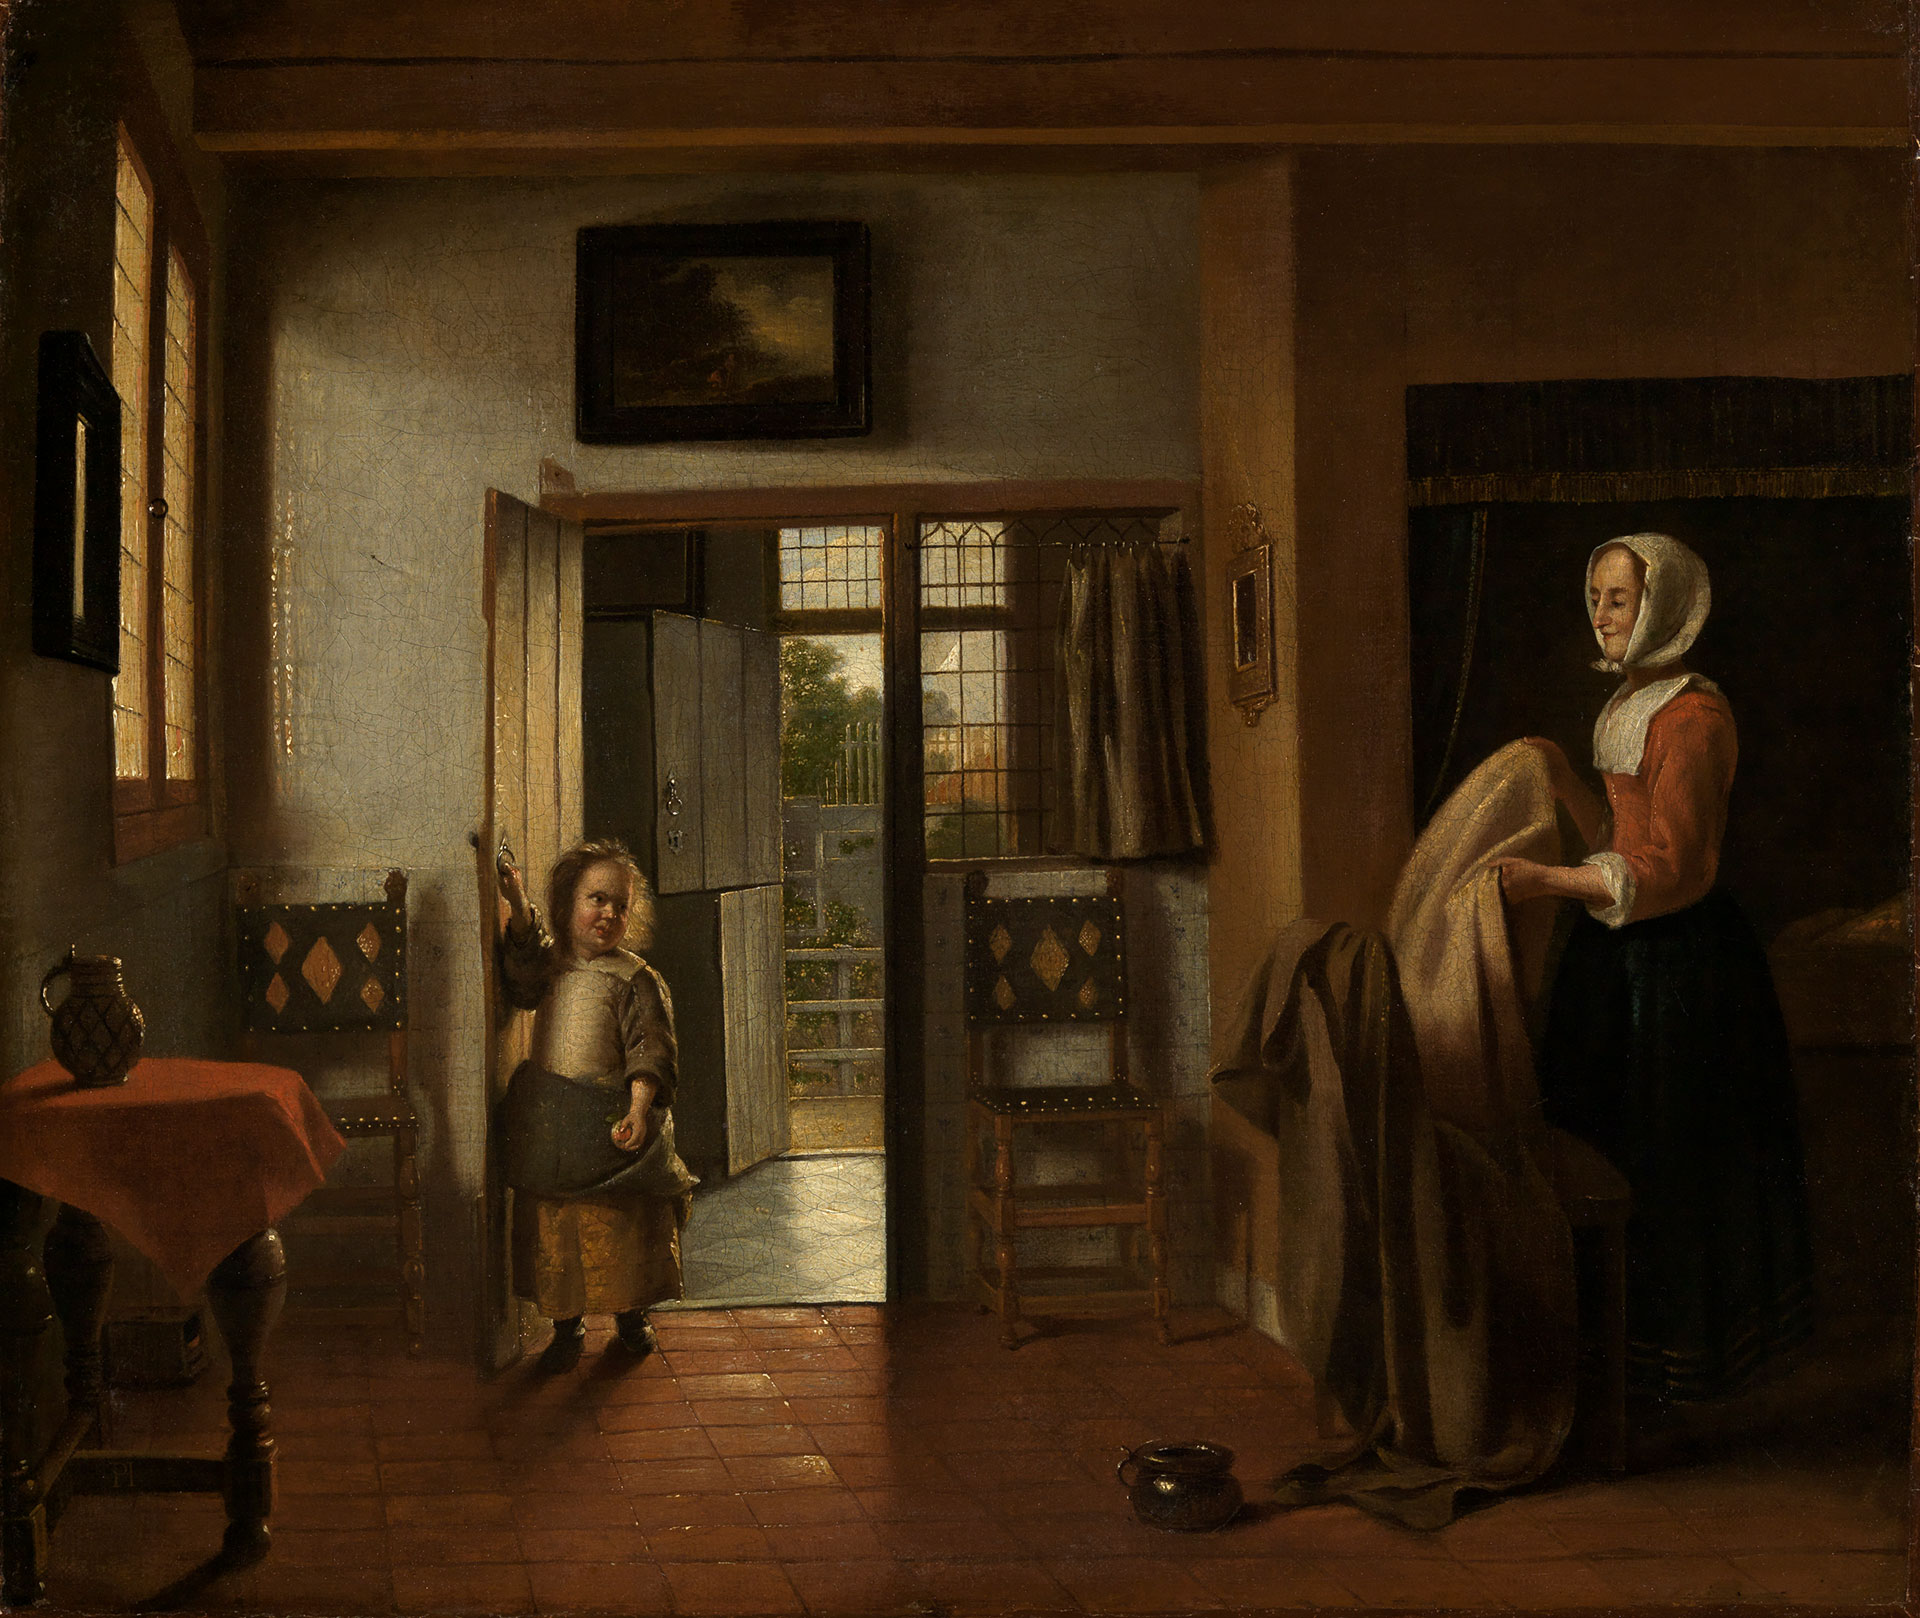 Abbildung des Werks "Im Schlafzimmer" von Pieter de Hooch, entstanden um 1658 oder 1660. Zu sehen ist ein Kind, welches ein Raum betritt. Im Raum steht eine Frau un faltet Tücher.  